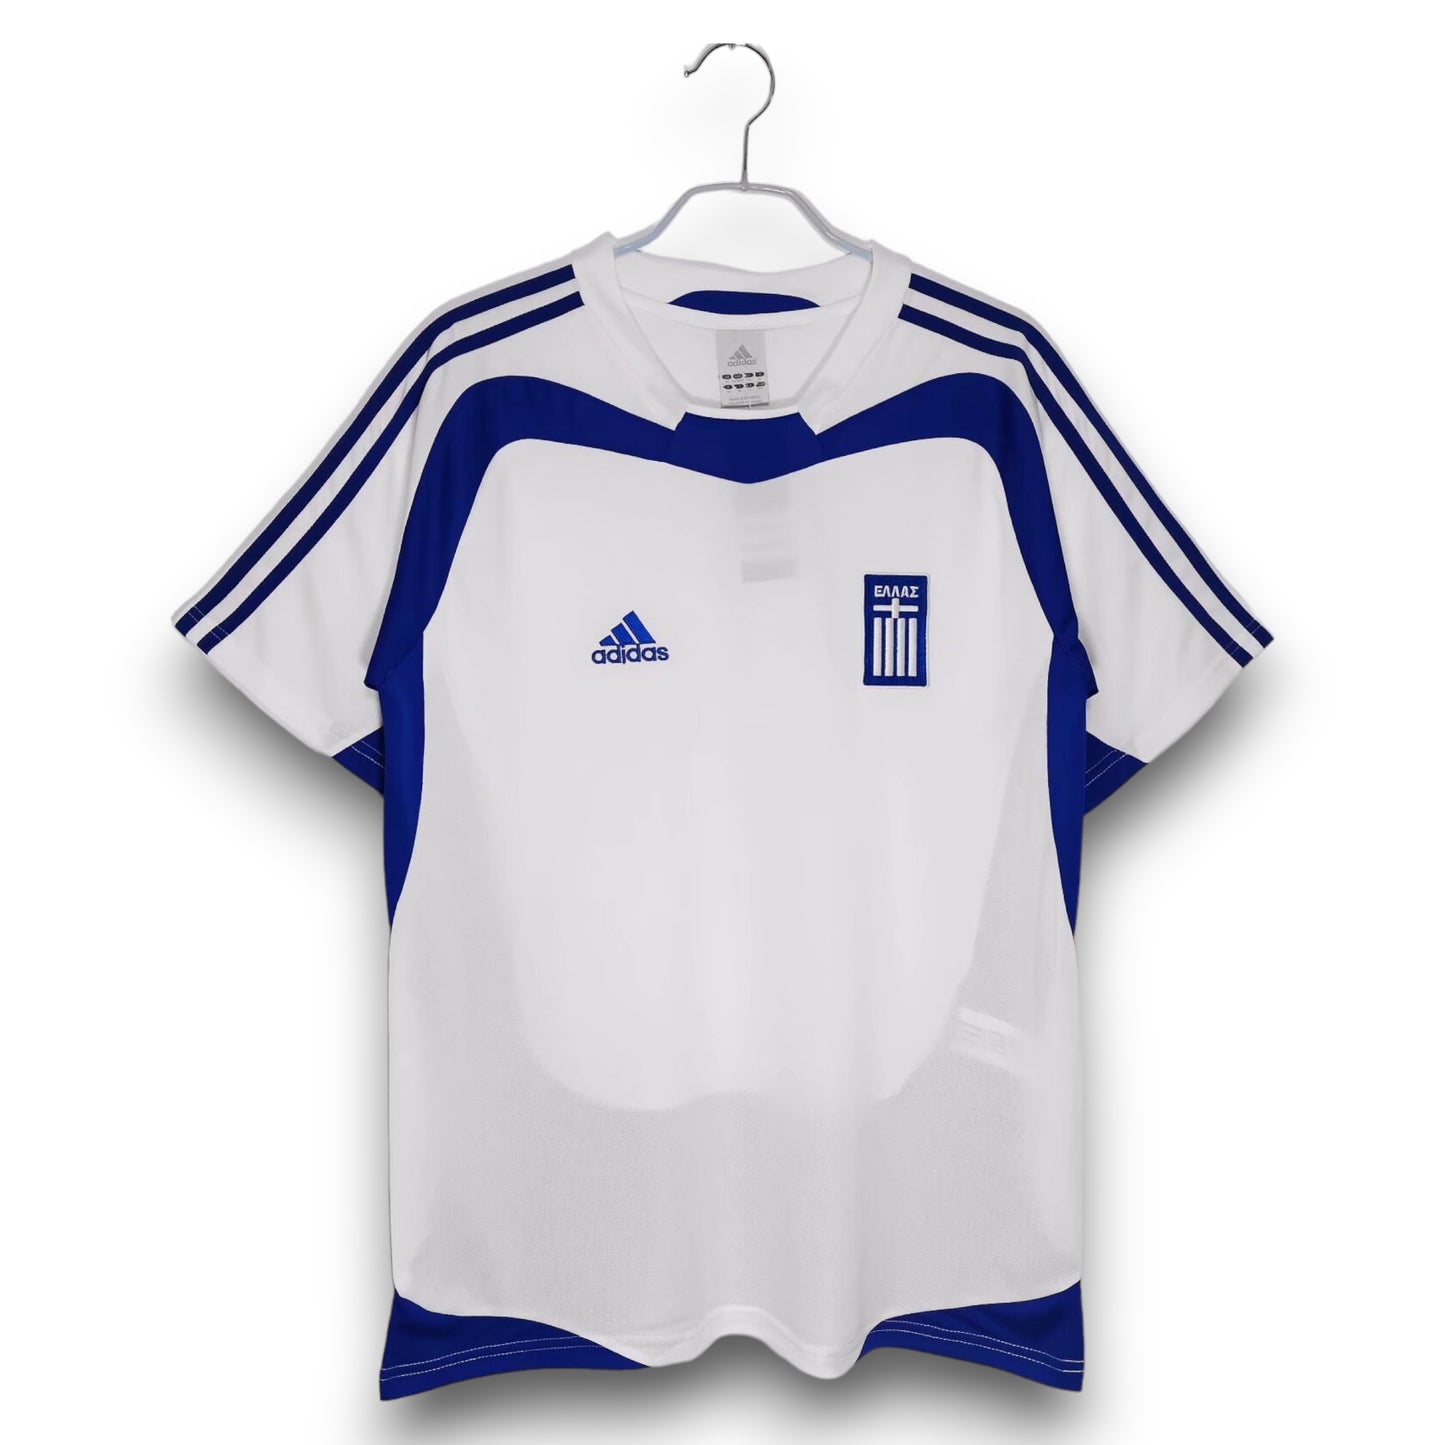 Camiseta Grecia 2004 Visitante